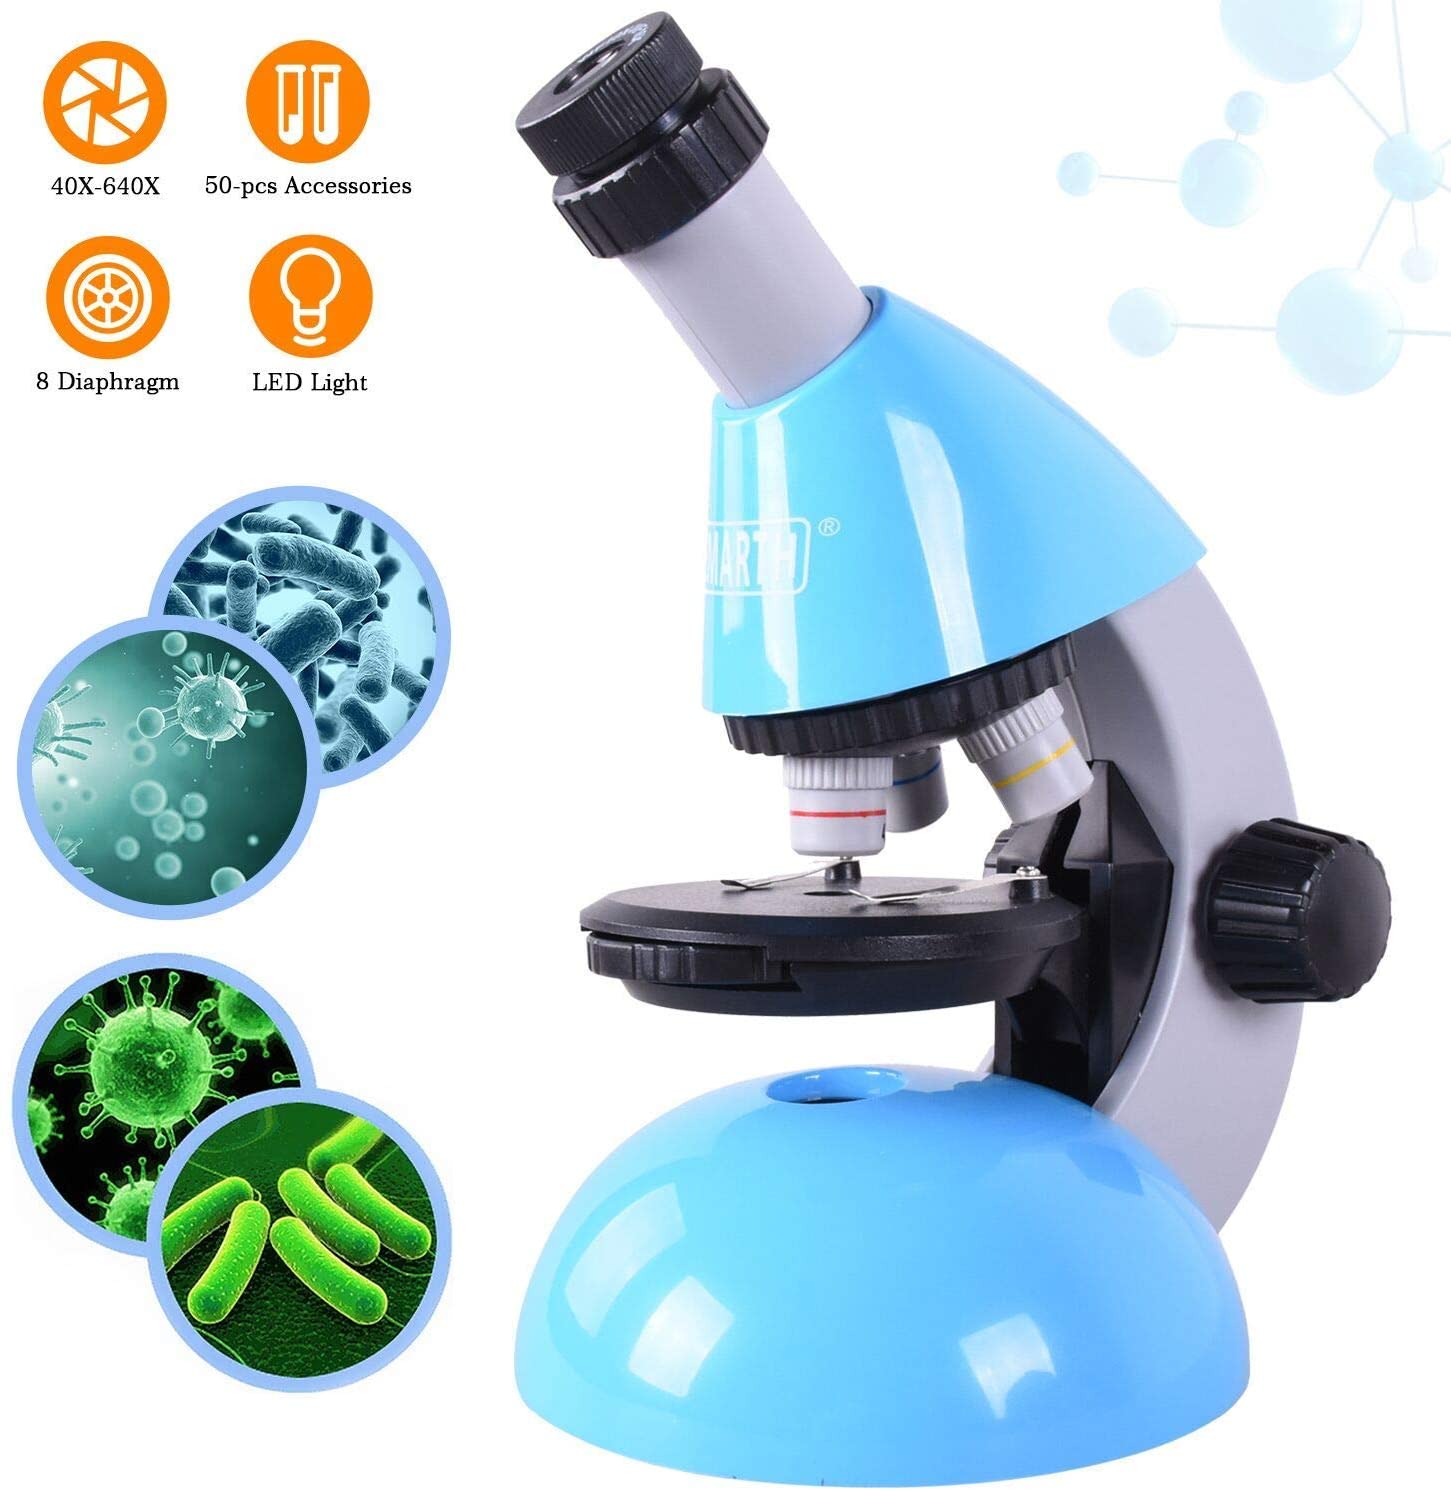 Los mejores microscopios para niños ·